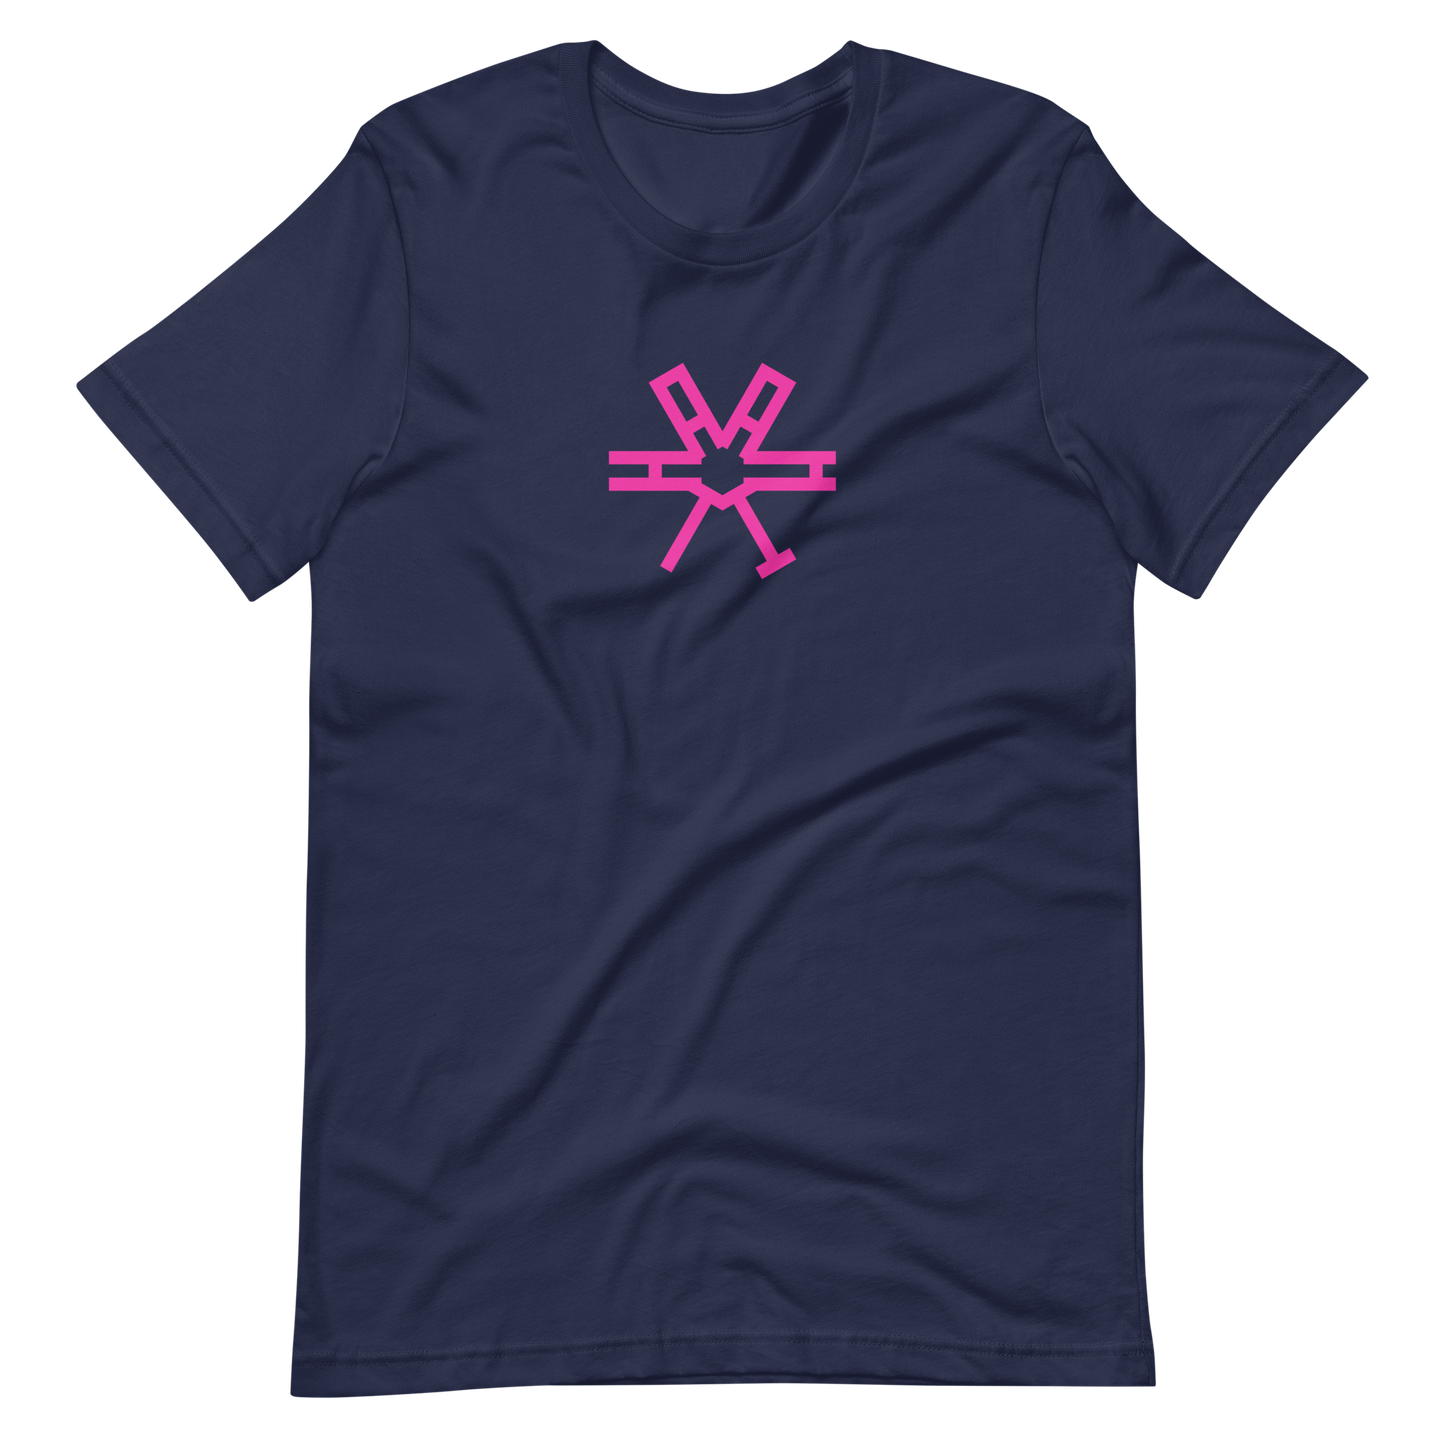 T-Shirt HAAMIT rund pink